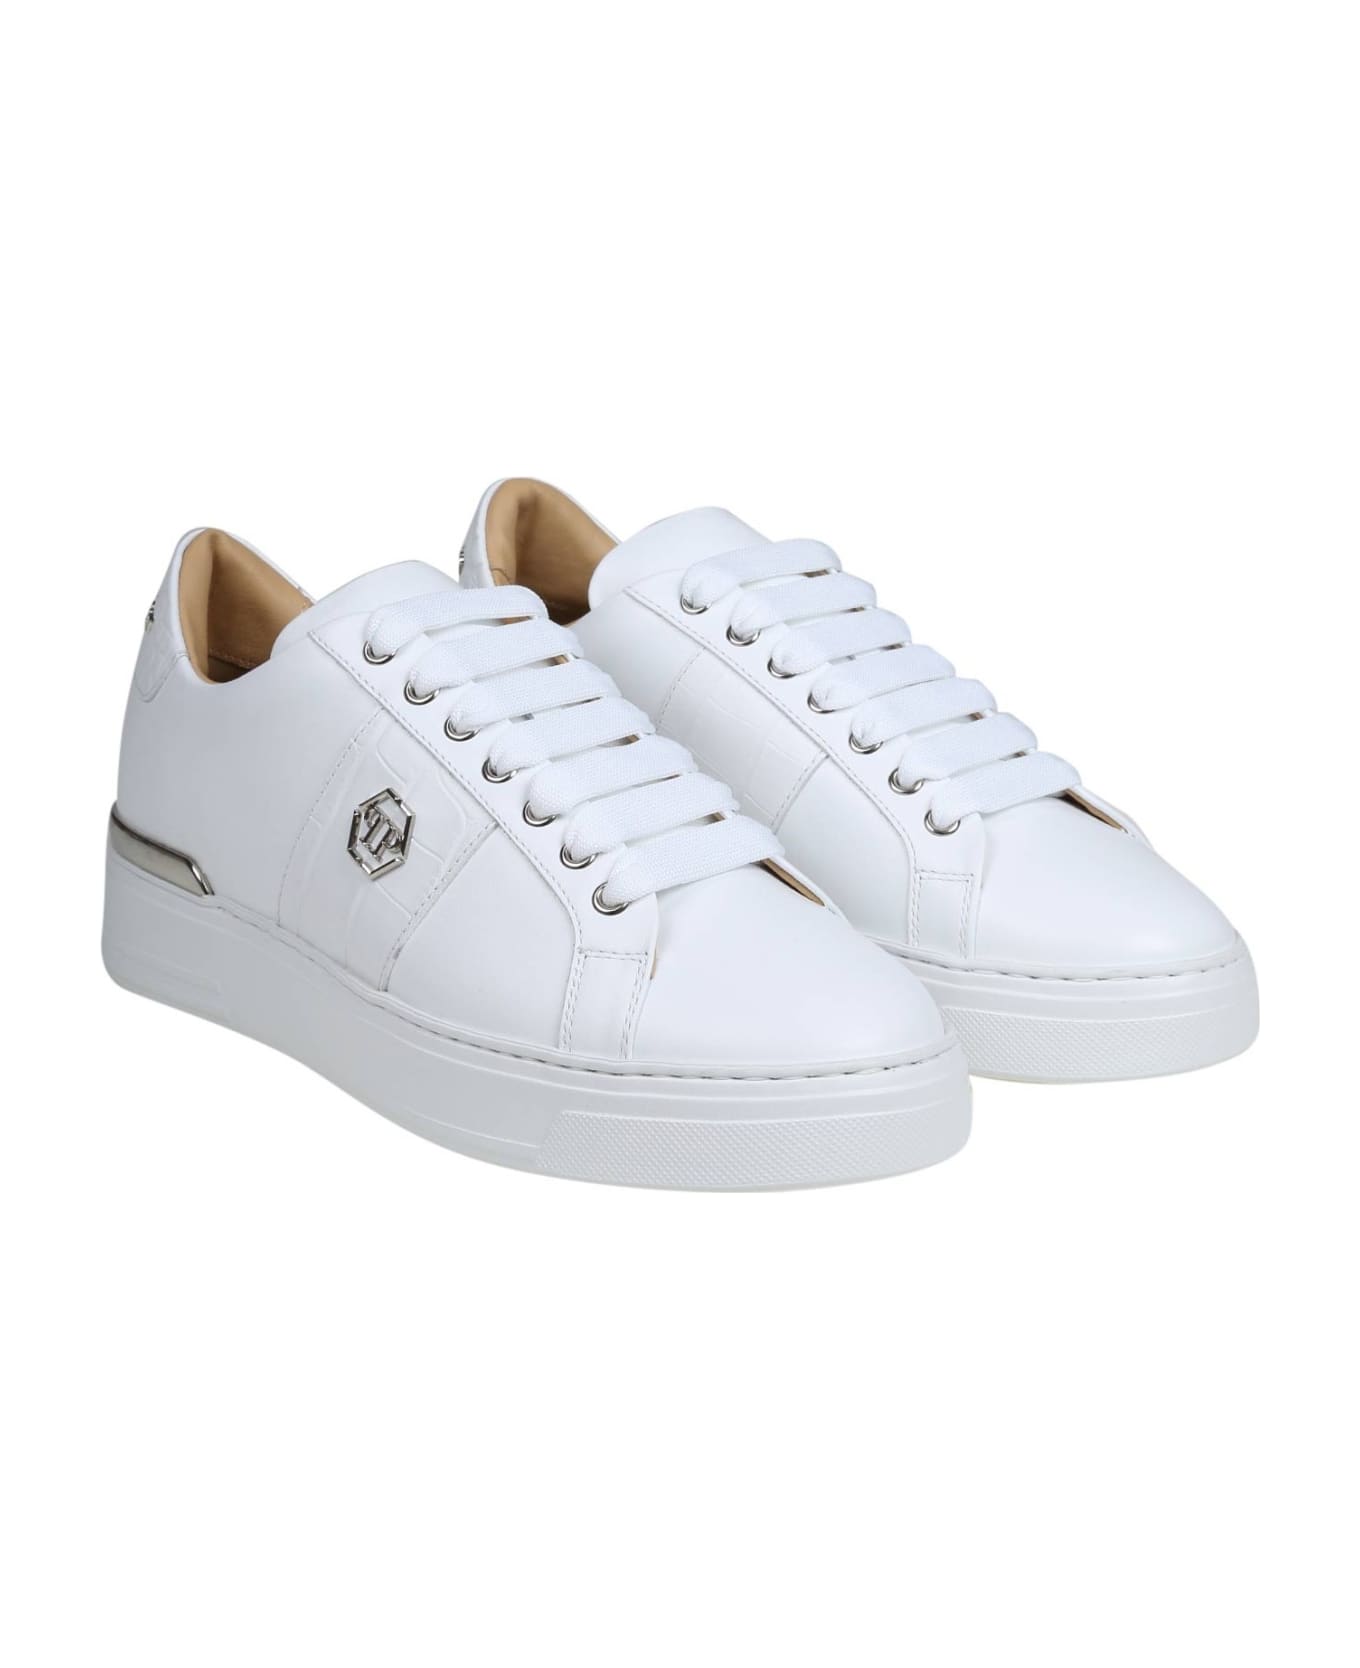 Philipp Plein Hexagon Sneakers In White Leather - White/White